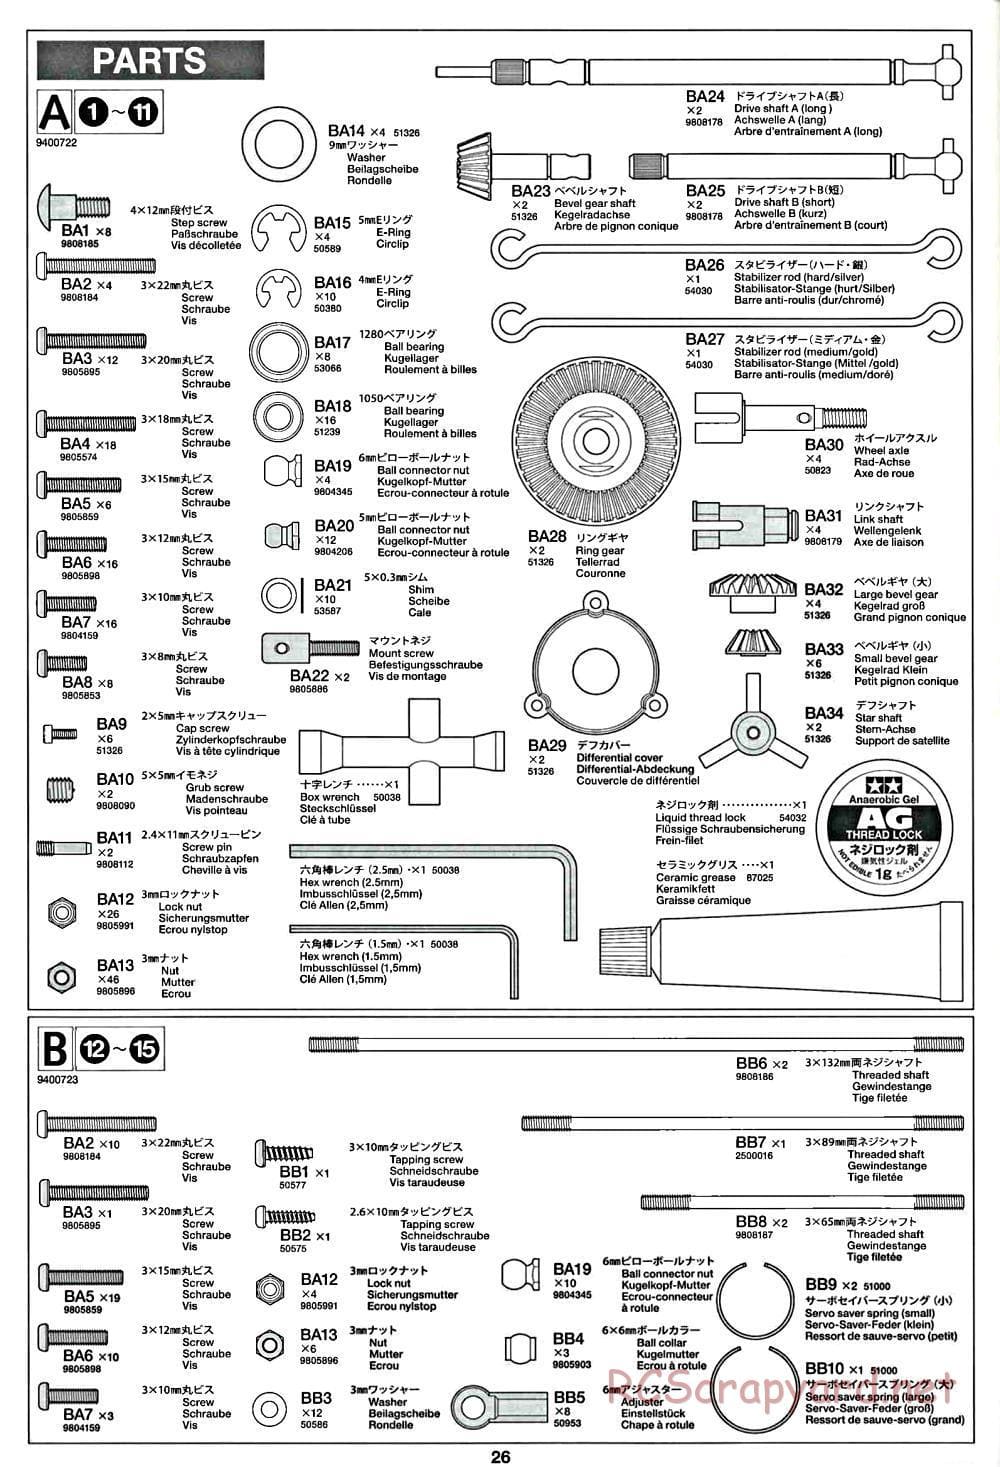 Tamiya - CR-01 Chassis - Manual - Page 26